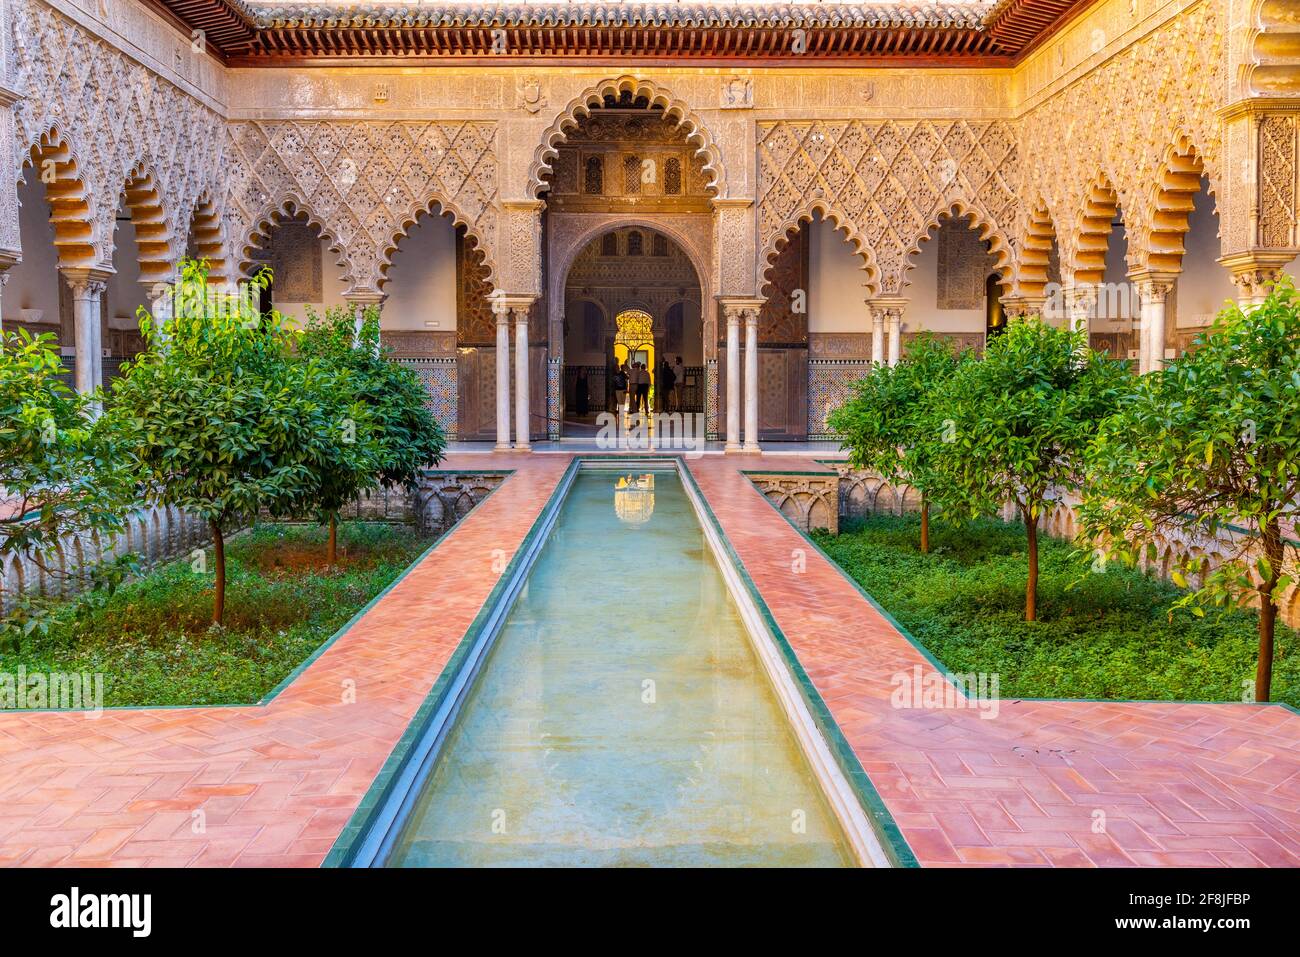 SEVILLA, SPAIN, JUNE 25, 2019: Patio de las Doncellas inside of the Mudejar palace at real alcazar de Sevilla in Spain Stock Photo